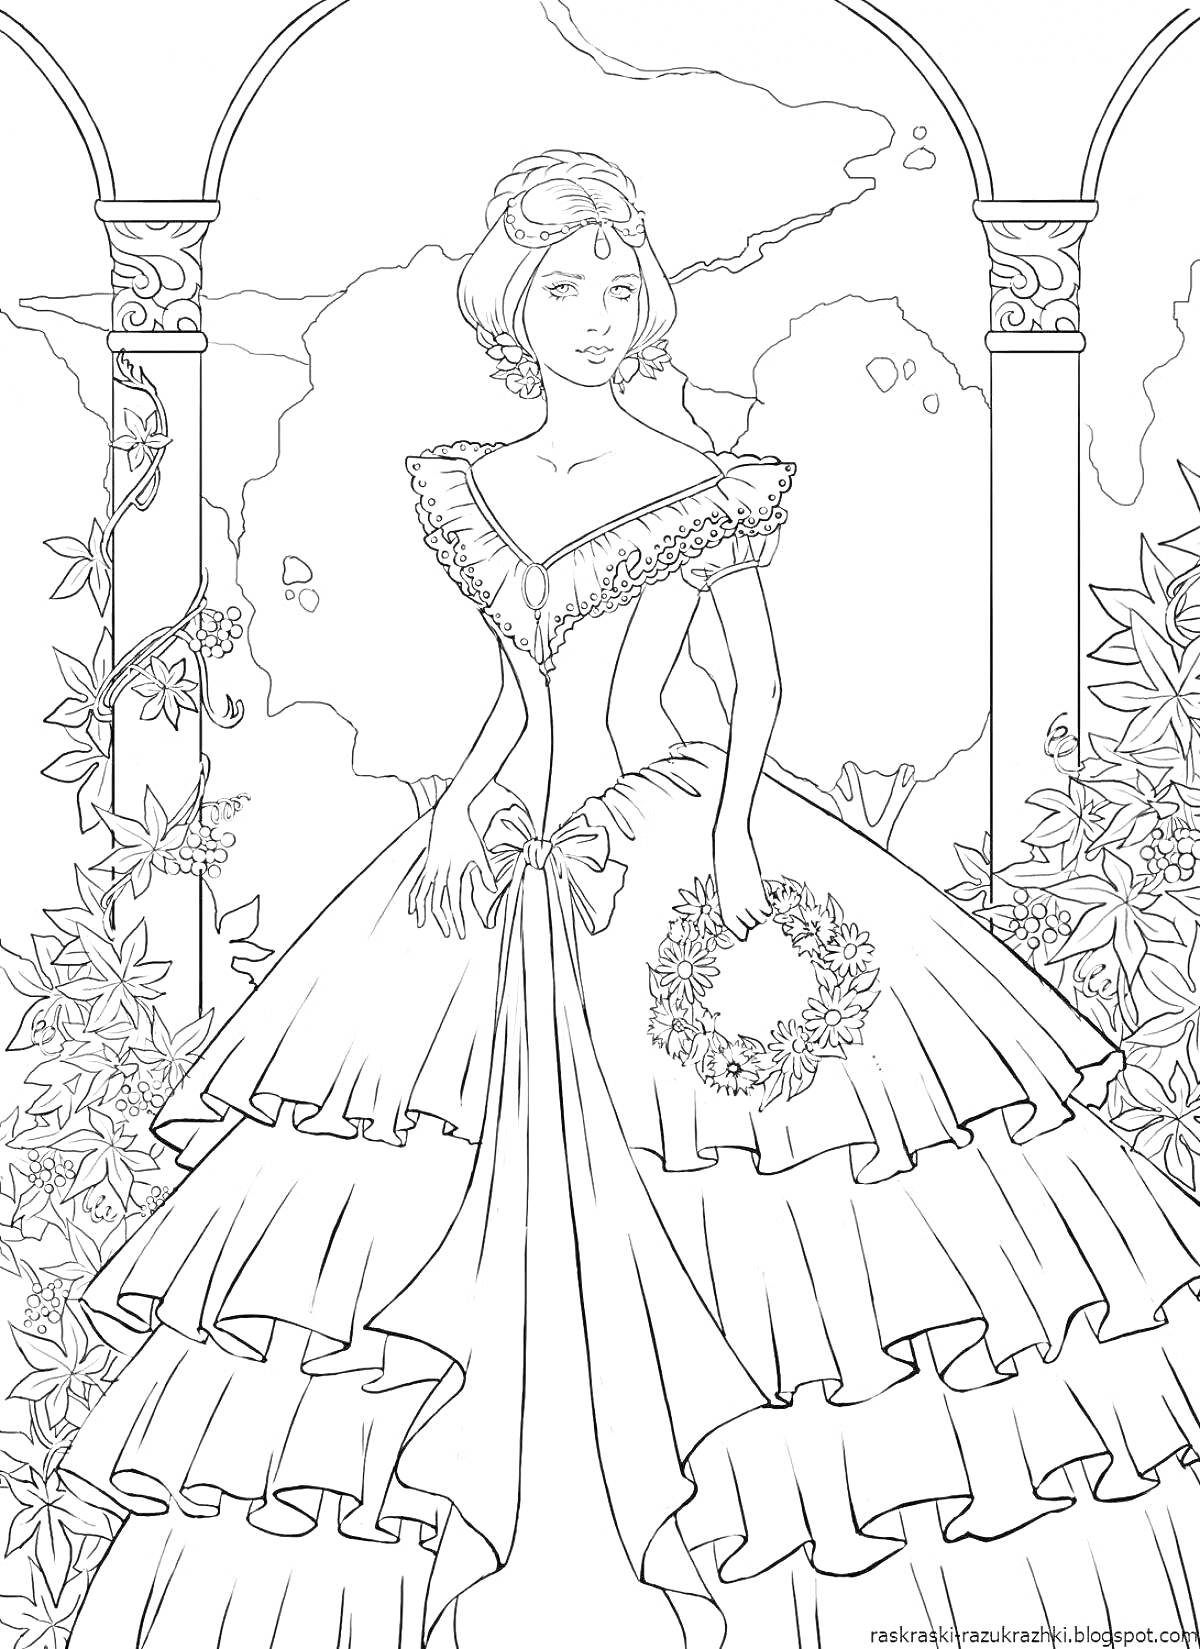 Раскраска Принцесса с венком в шикарном платье на фоне арок и лиан